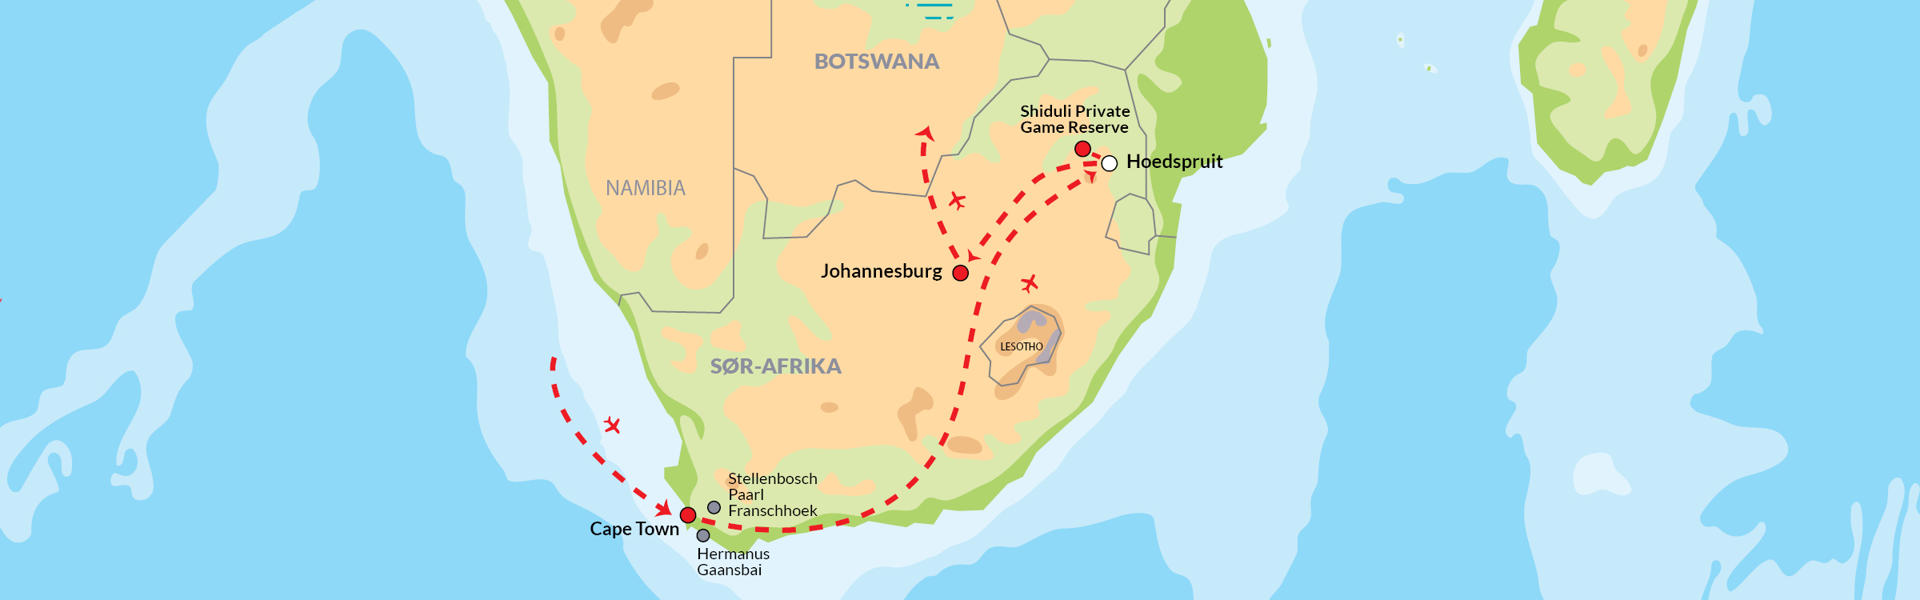 Cape Town, vinlandet & safari i privat game reserve - Reiserute